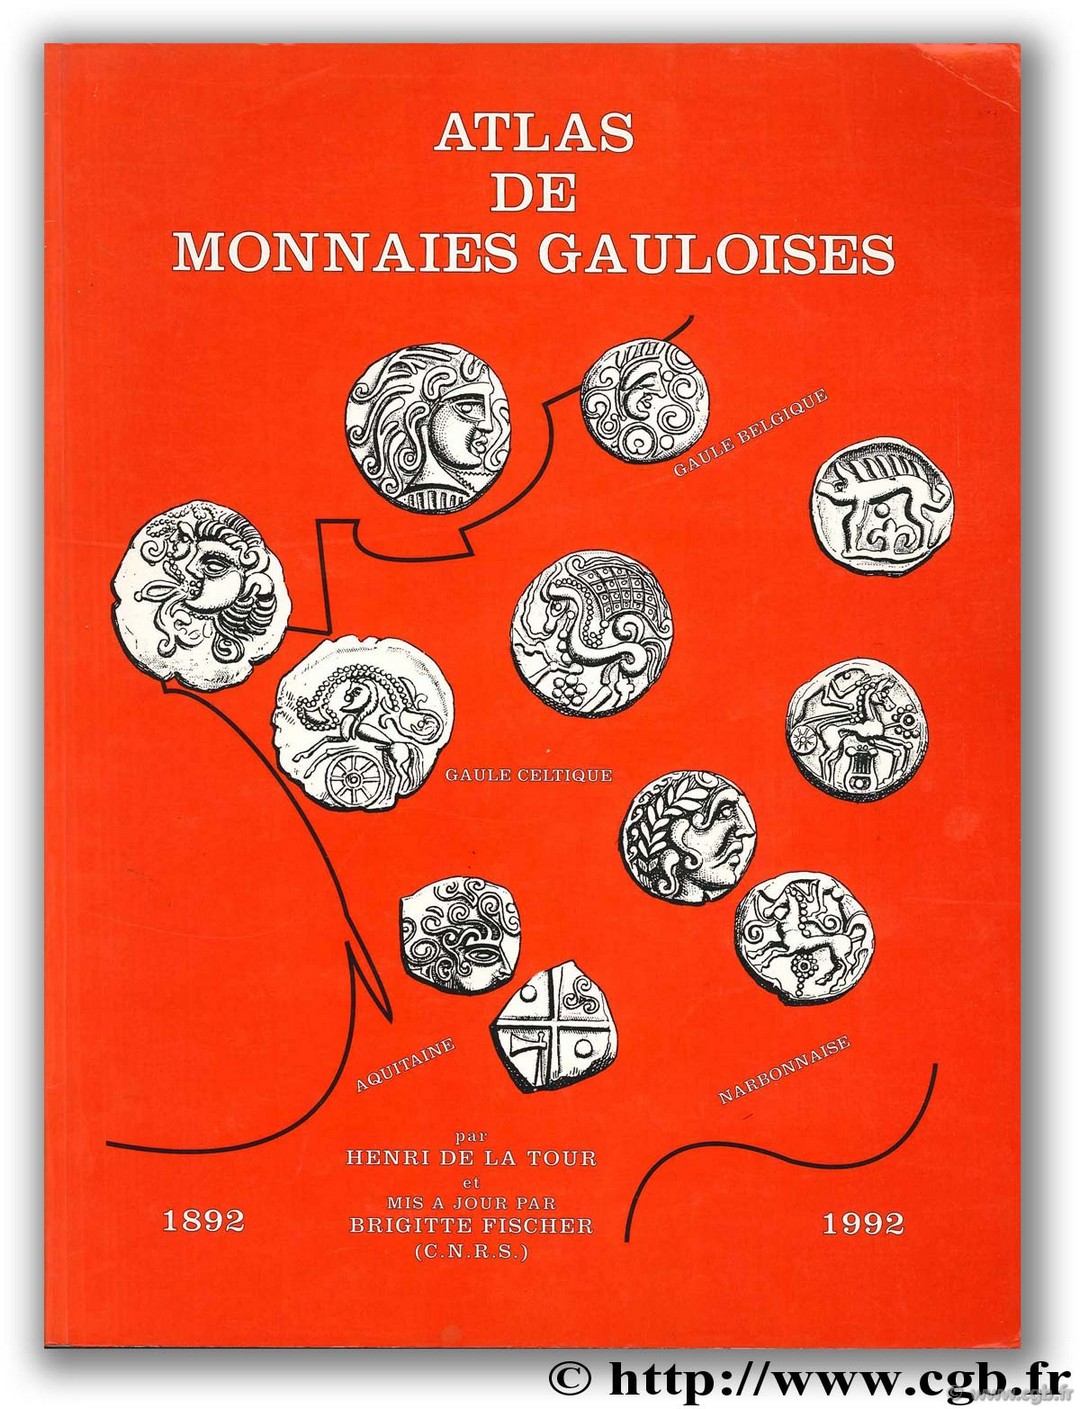 Atlas des monnaies gauloises La TOUR H. de